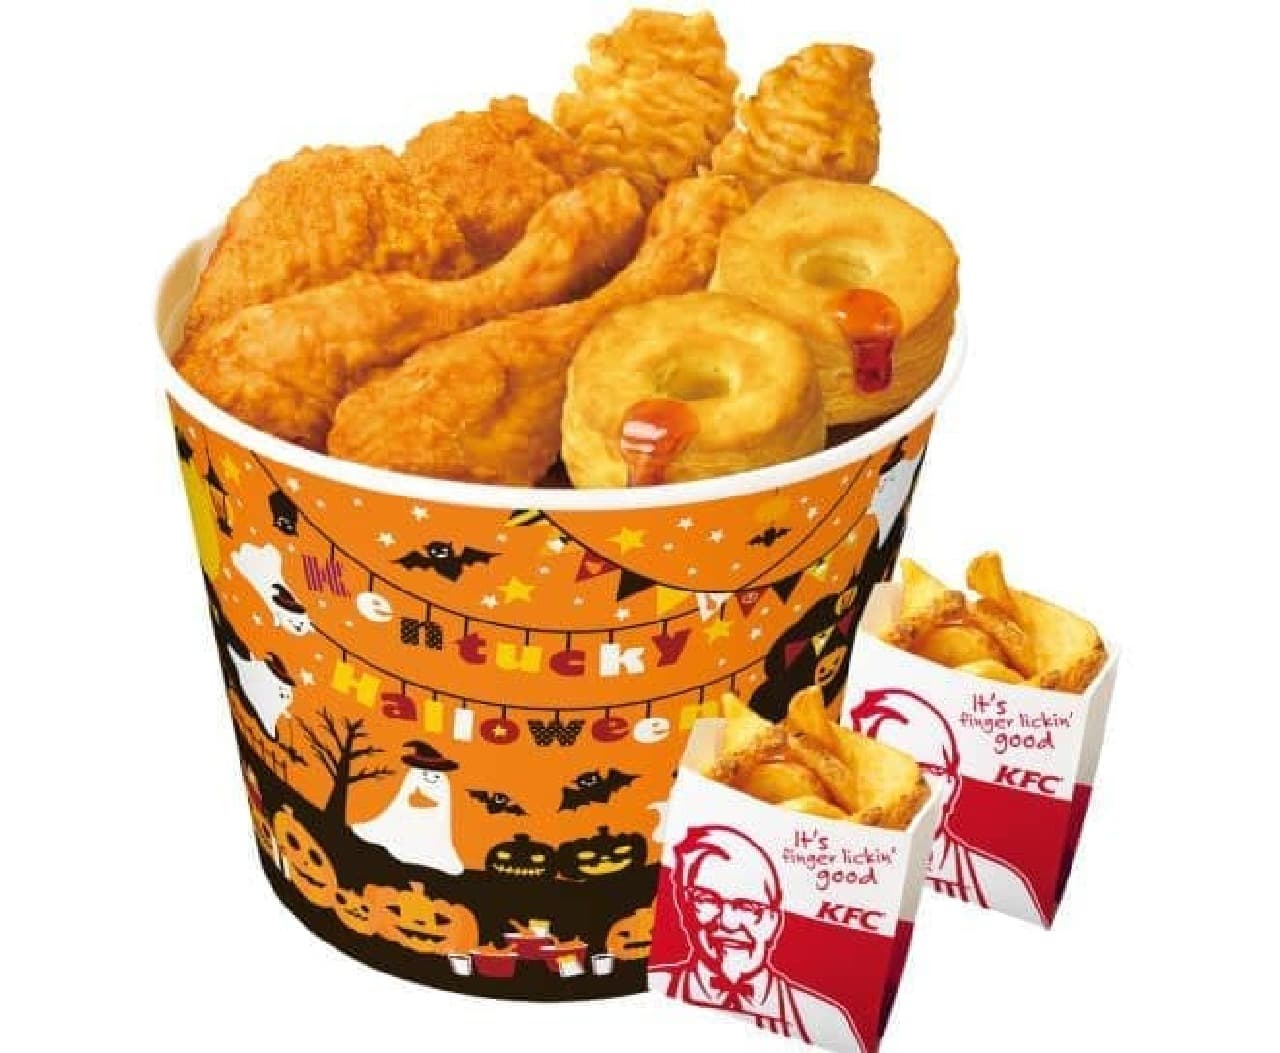 Kentucky Fried Chicken "Halloween Barrel"